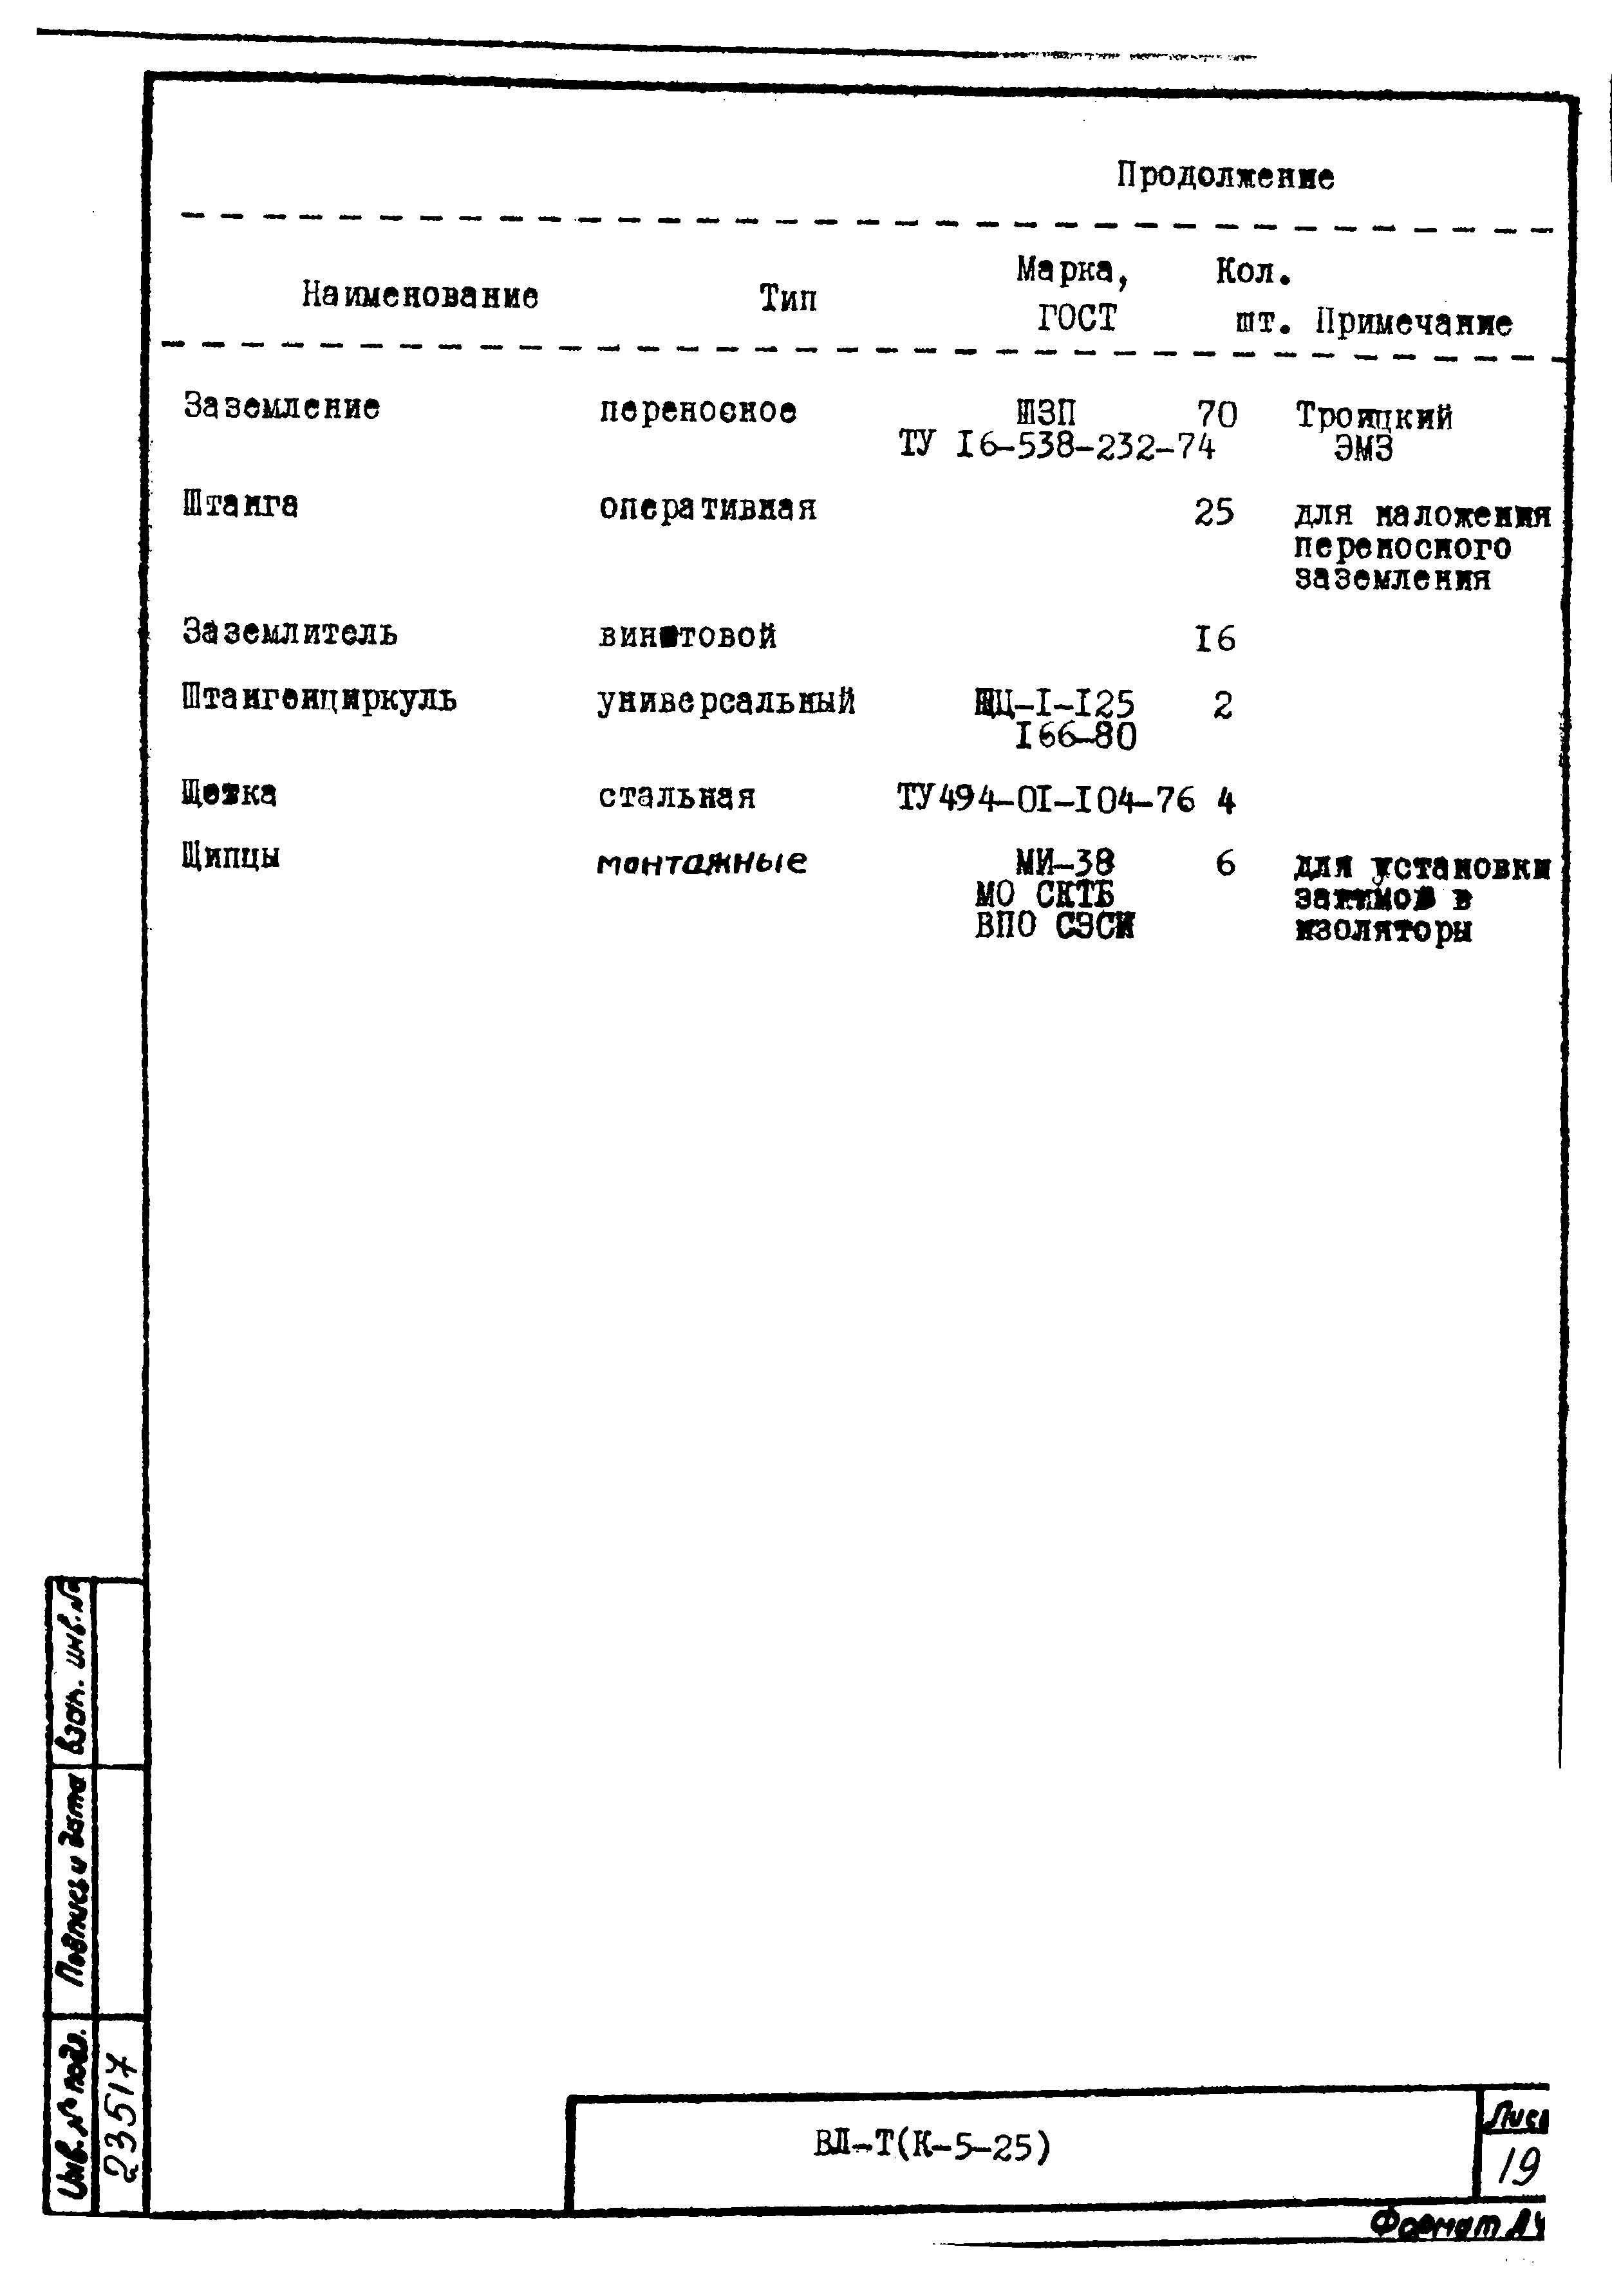 Технологическая карта К-5-25-13